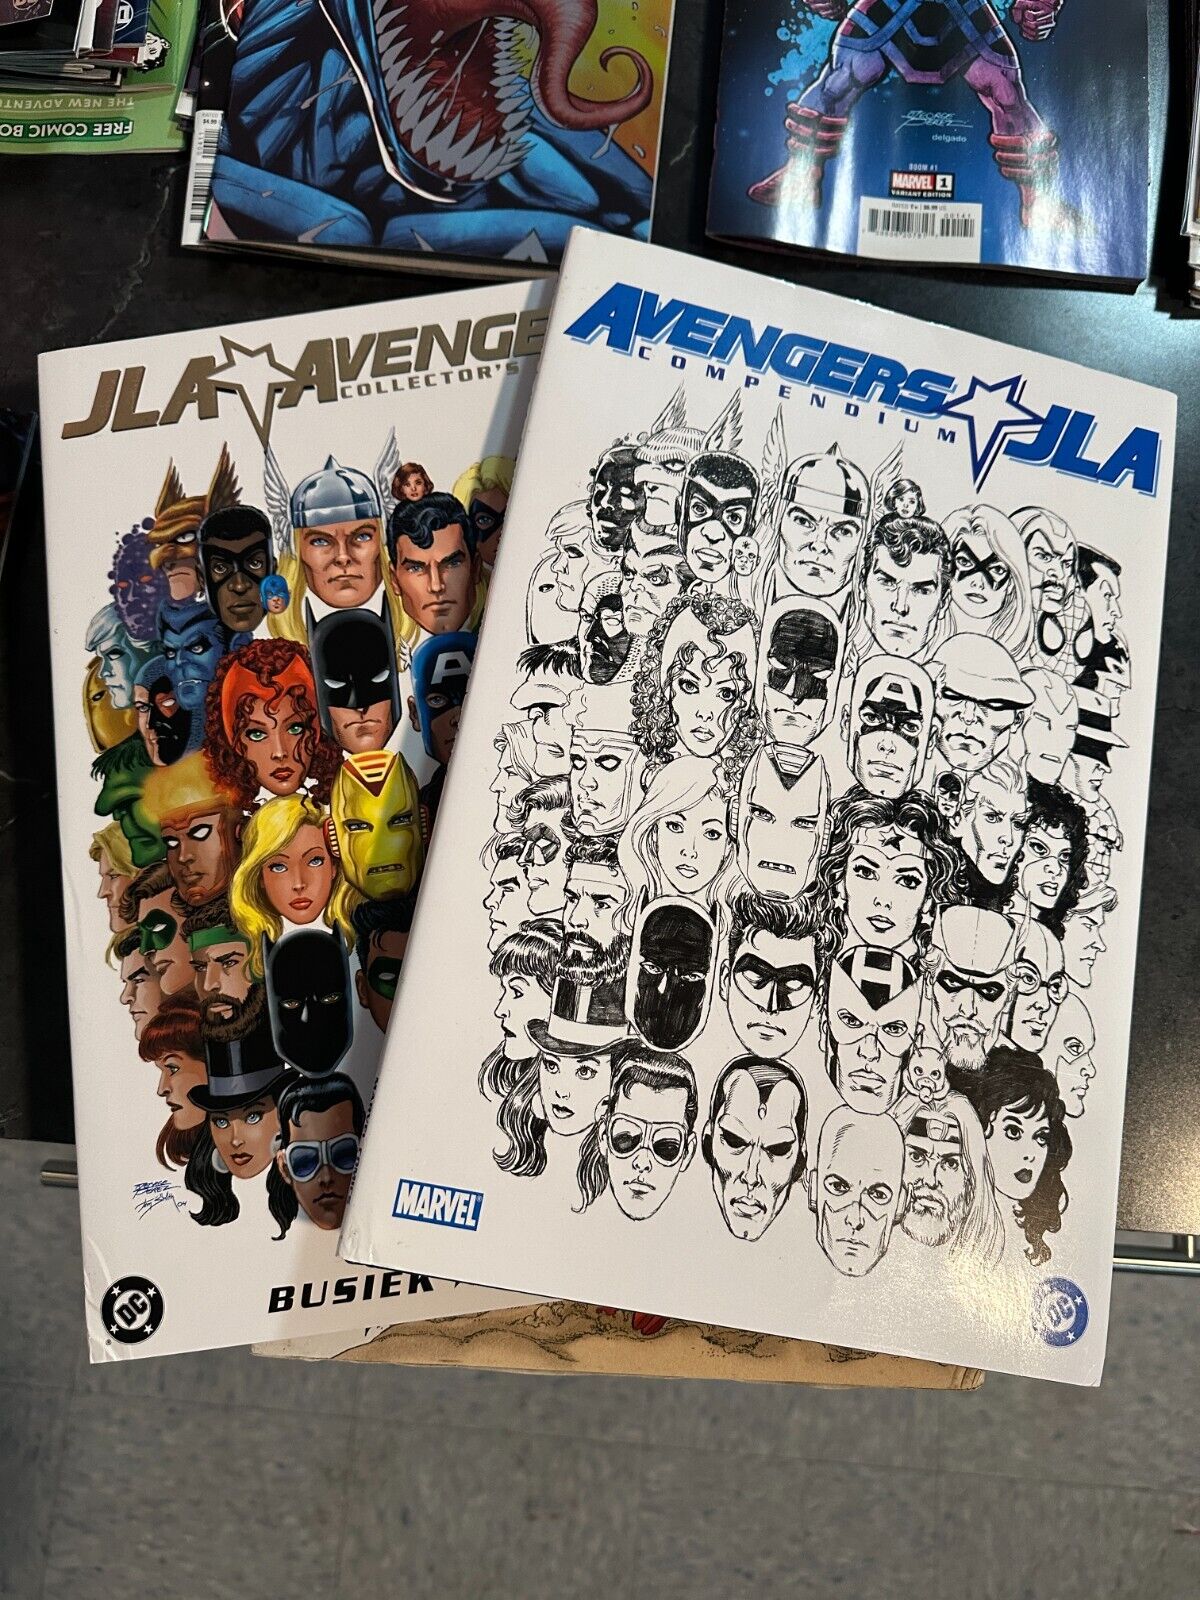 JLA Avengers Busiek Perez Hardcover w/Slipcase,